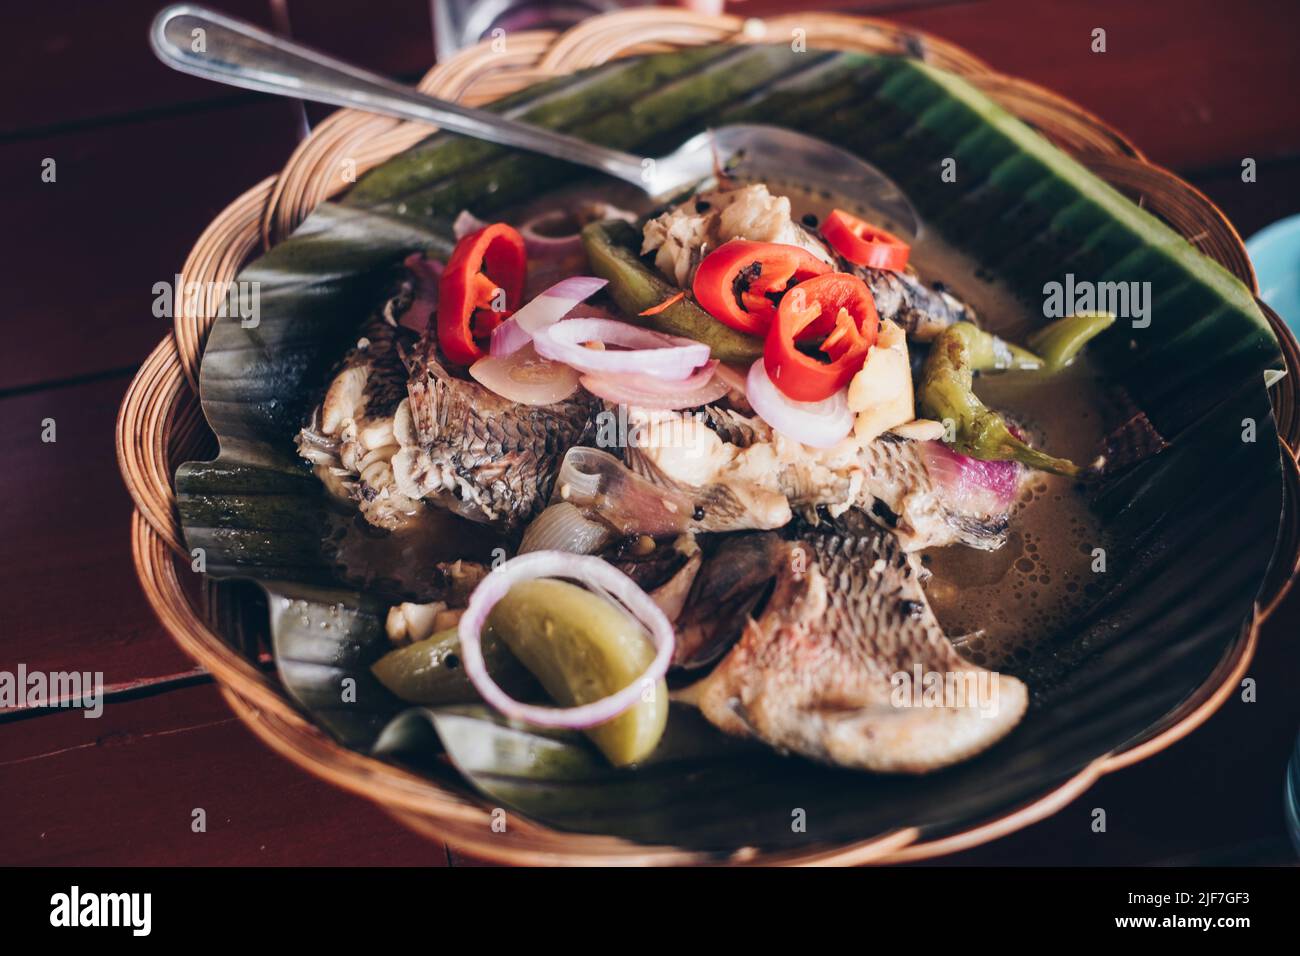 Service de plat philippin Tilapia poisson simmered dans le vinaigre et les épices sur la feuille de banane sur plaque en rotin bois. Mise au point sélective. Banque D'Images